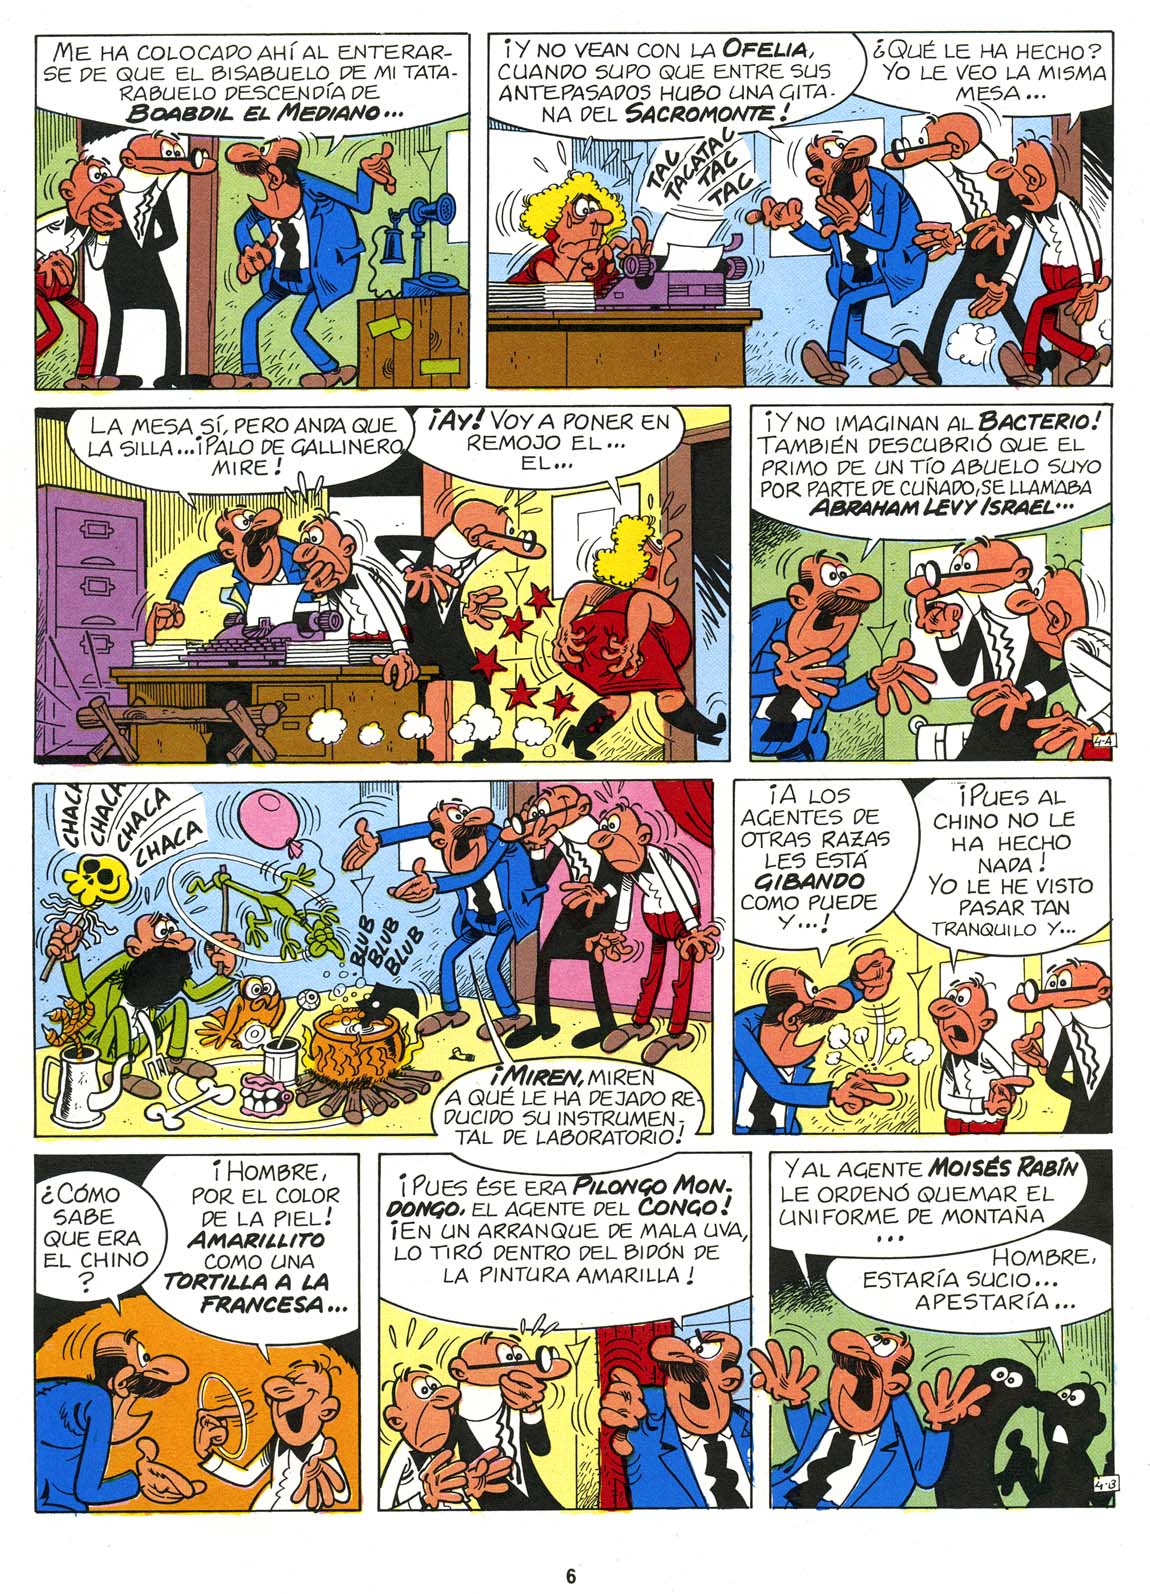 Galicia Comic: Magos del Humor 44 - Mortadelo y Filemón - El racista